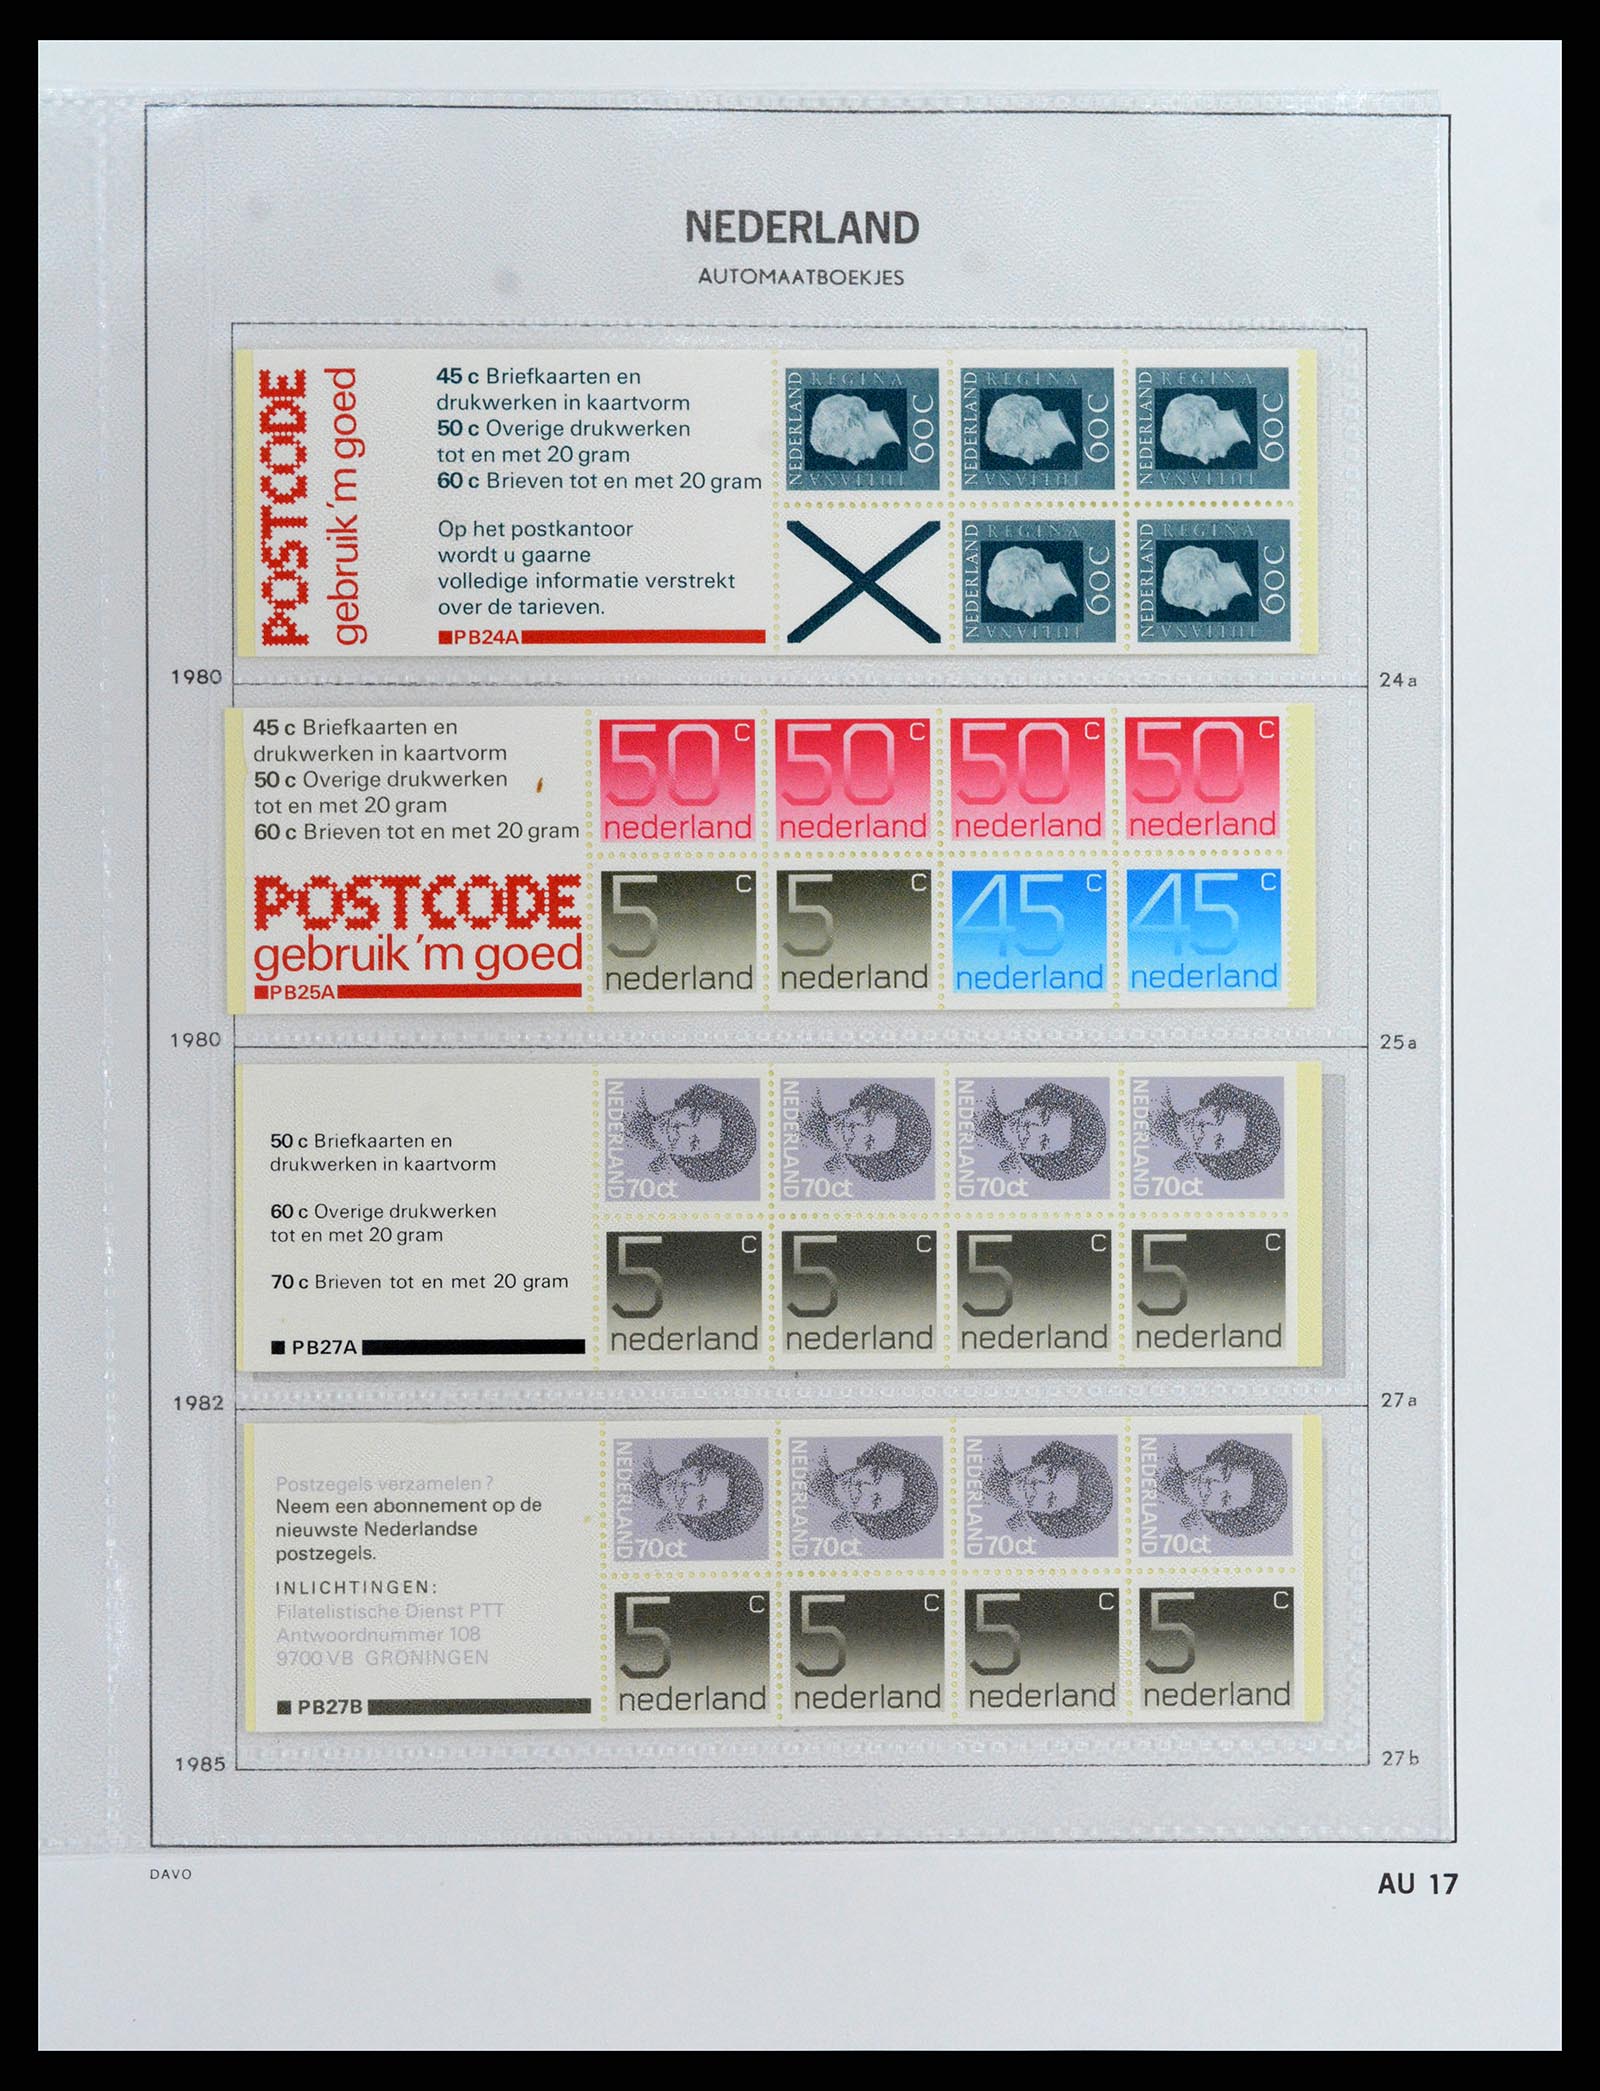 37871 017 - Stamp Collection 37871 Netherlands stampbooklets 1964-2000.